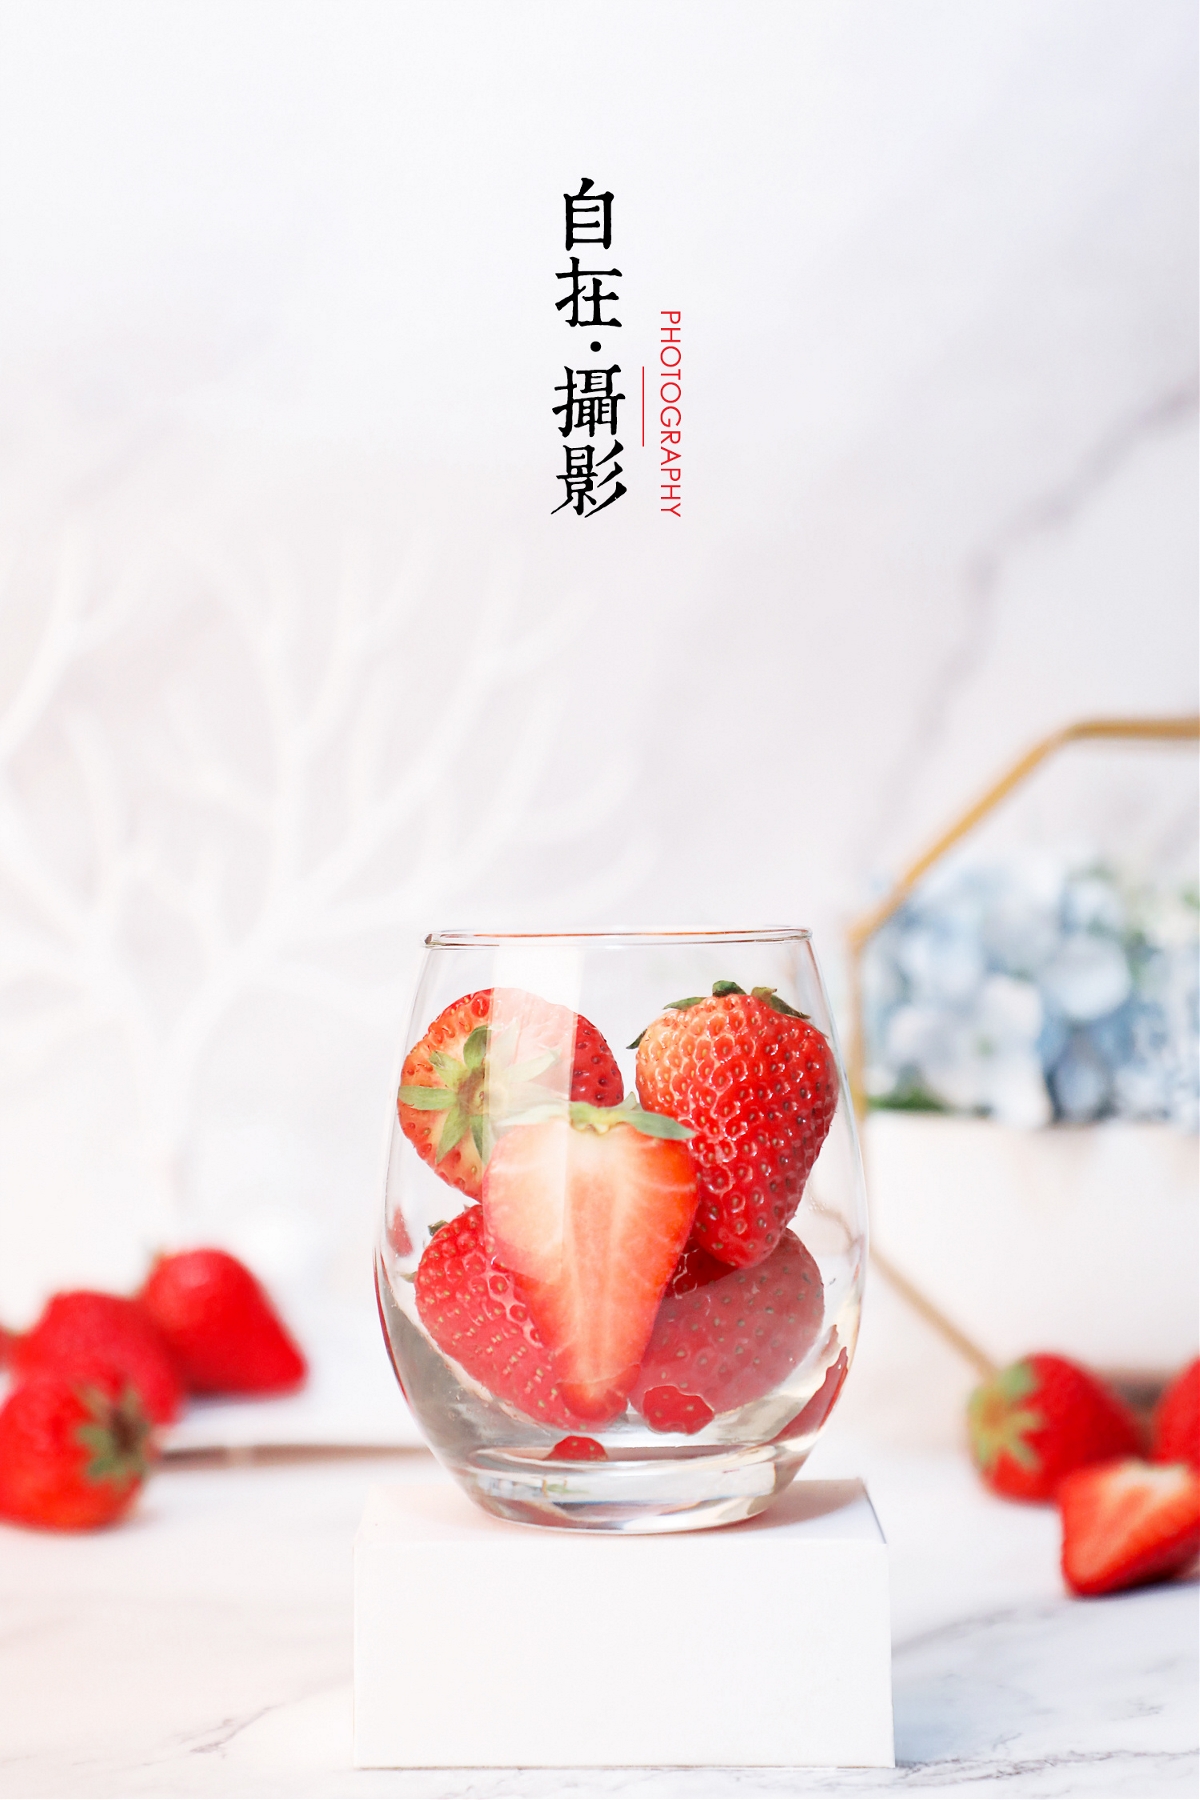 奶油草莓|水果|牛奶|产品摄影